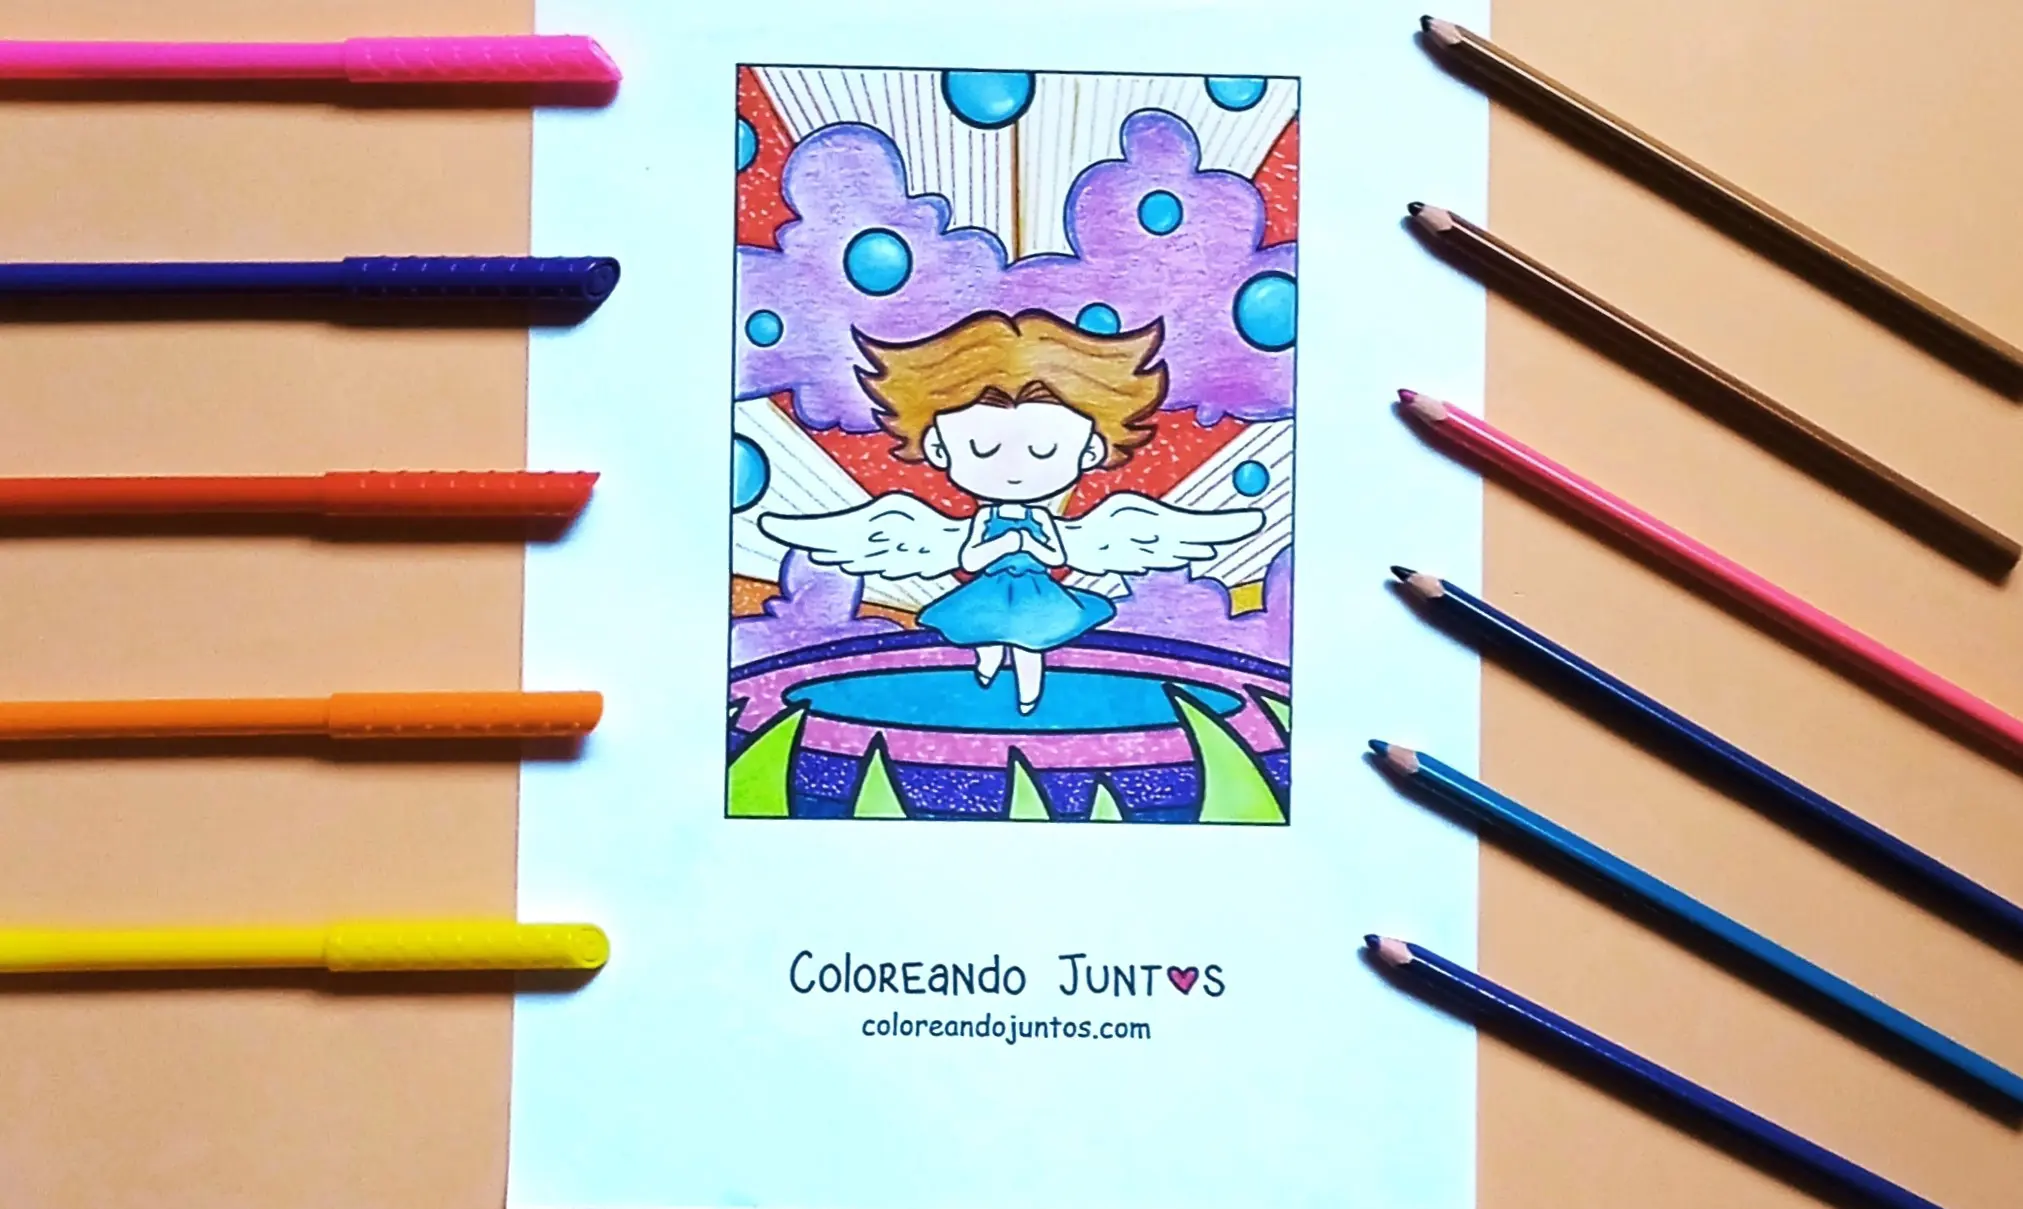 45 Dibujos de Ángeles para Colorear ¡Gratis! | Coloreando Juntos